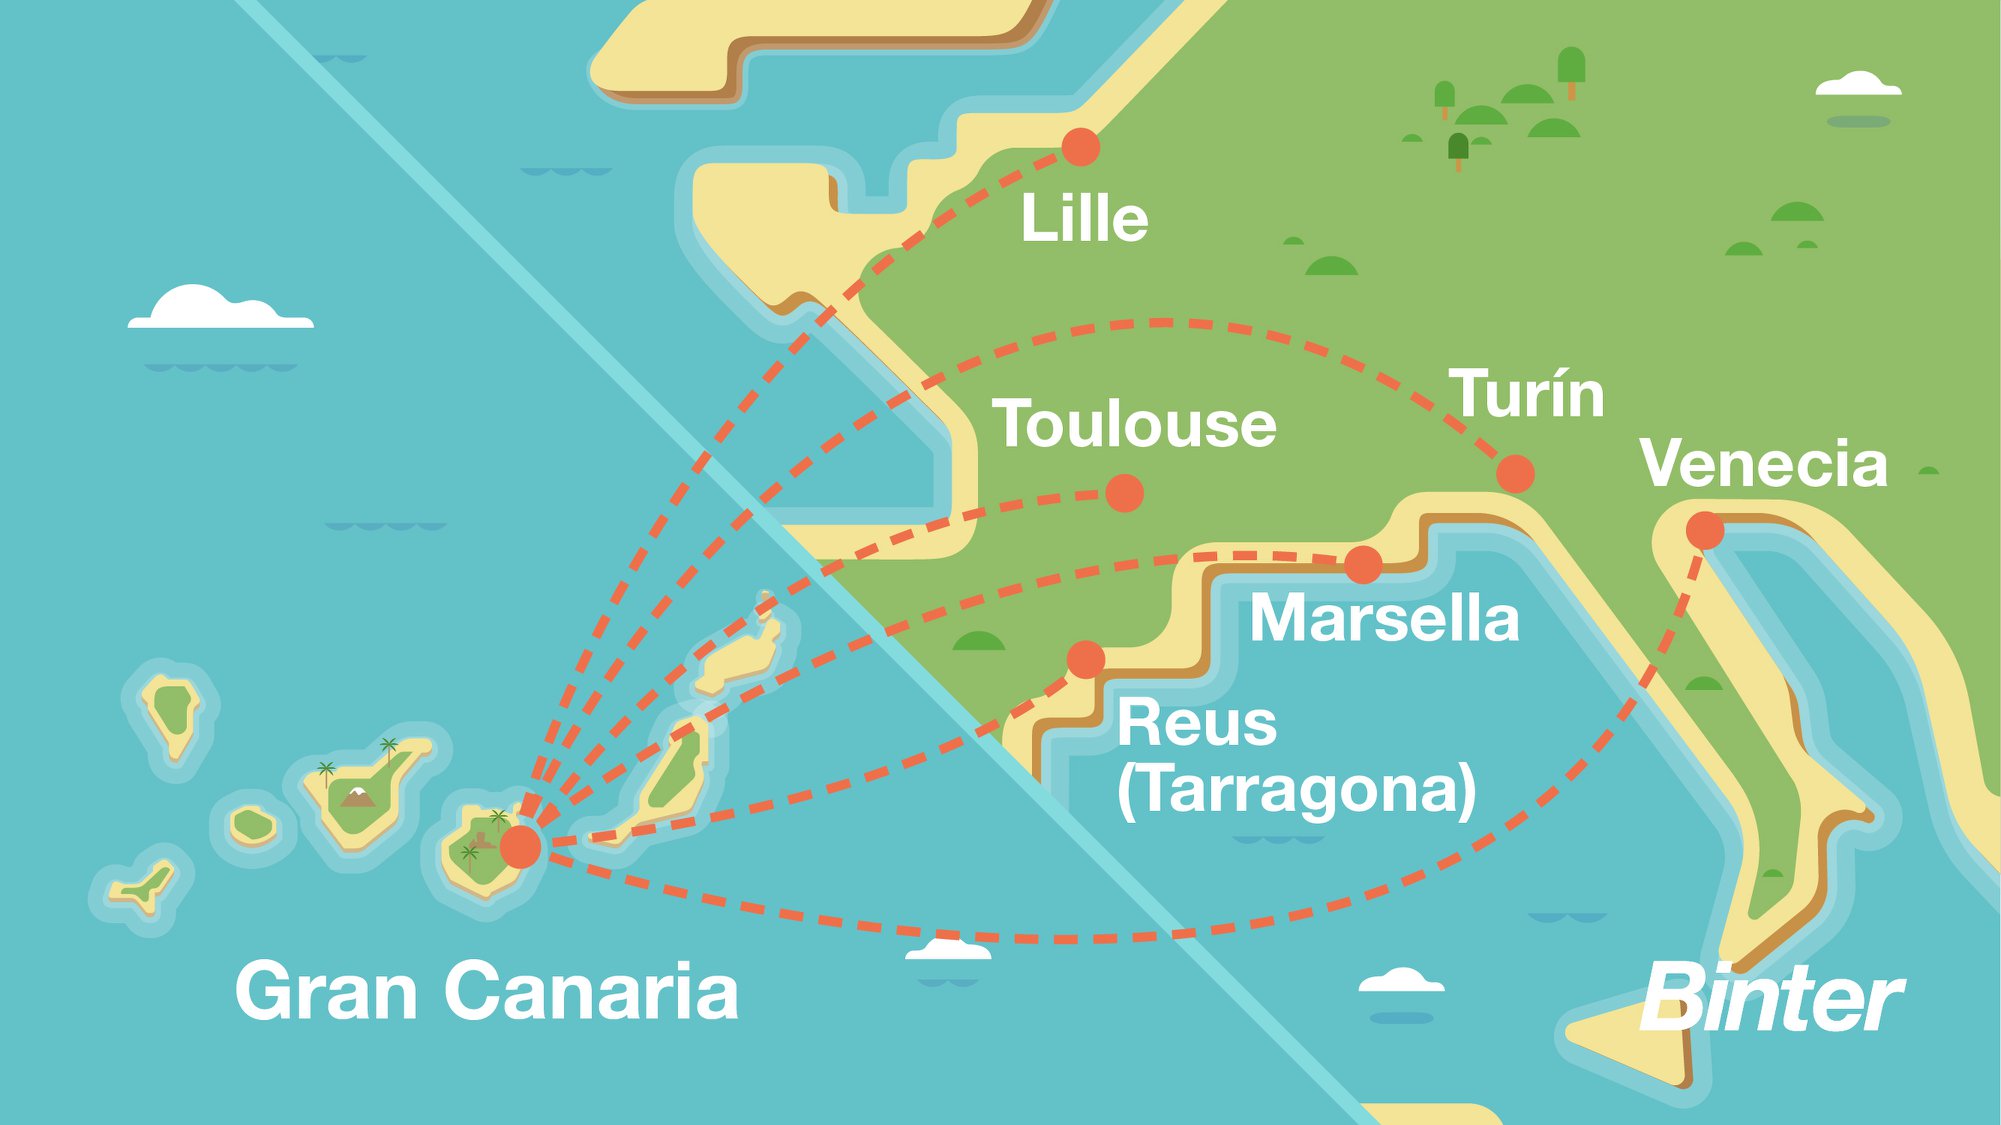 Le réseau de Binter qui relie Grande Canarie aux Canaries en Espagne à Marseille, Lille et Toulouse - DR Facebook